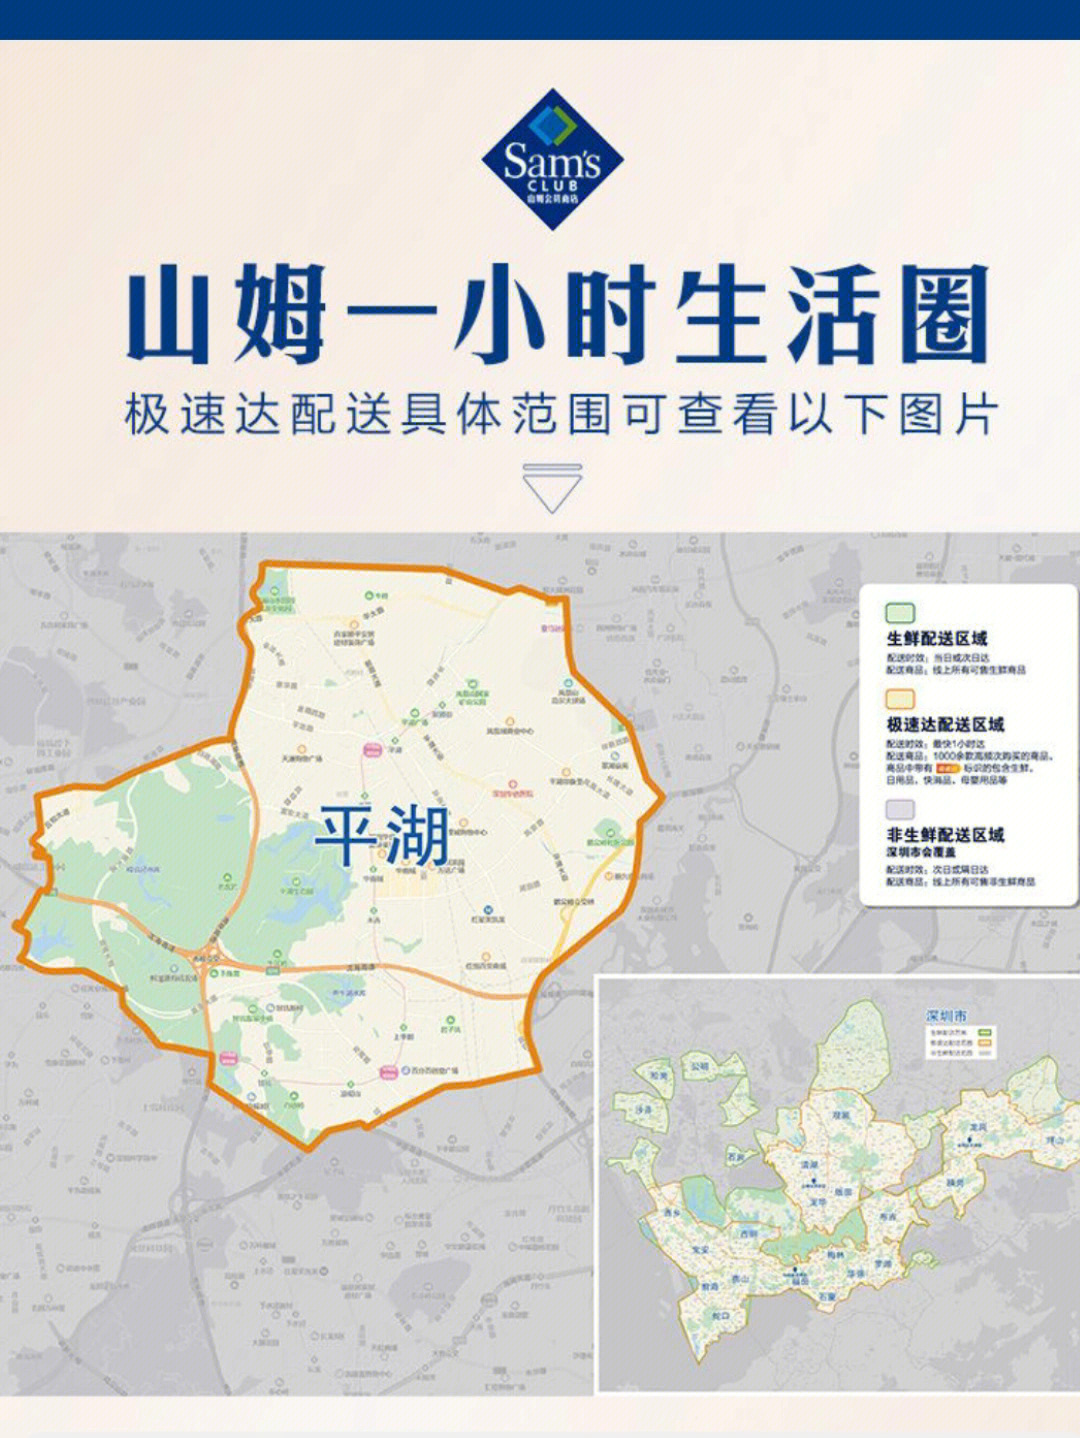 上海山姆会员配送地图图片